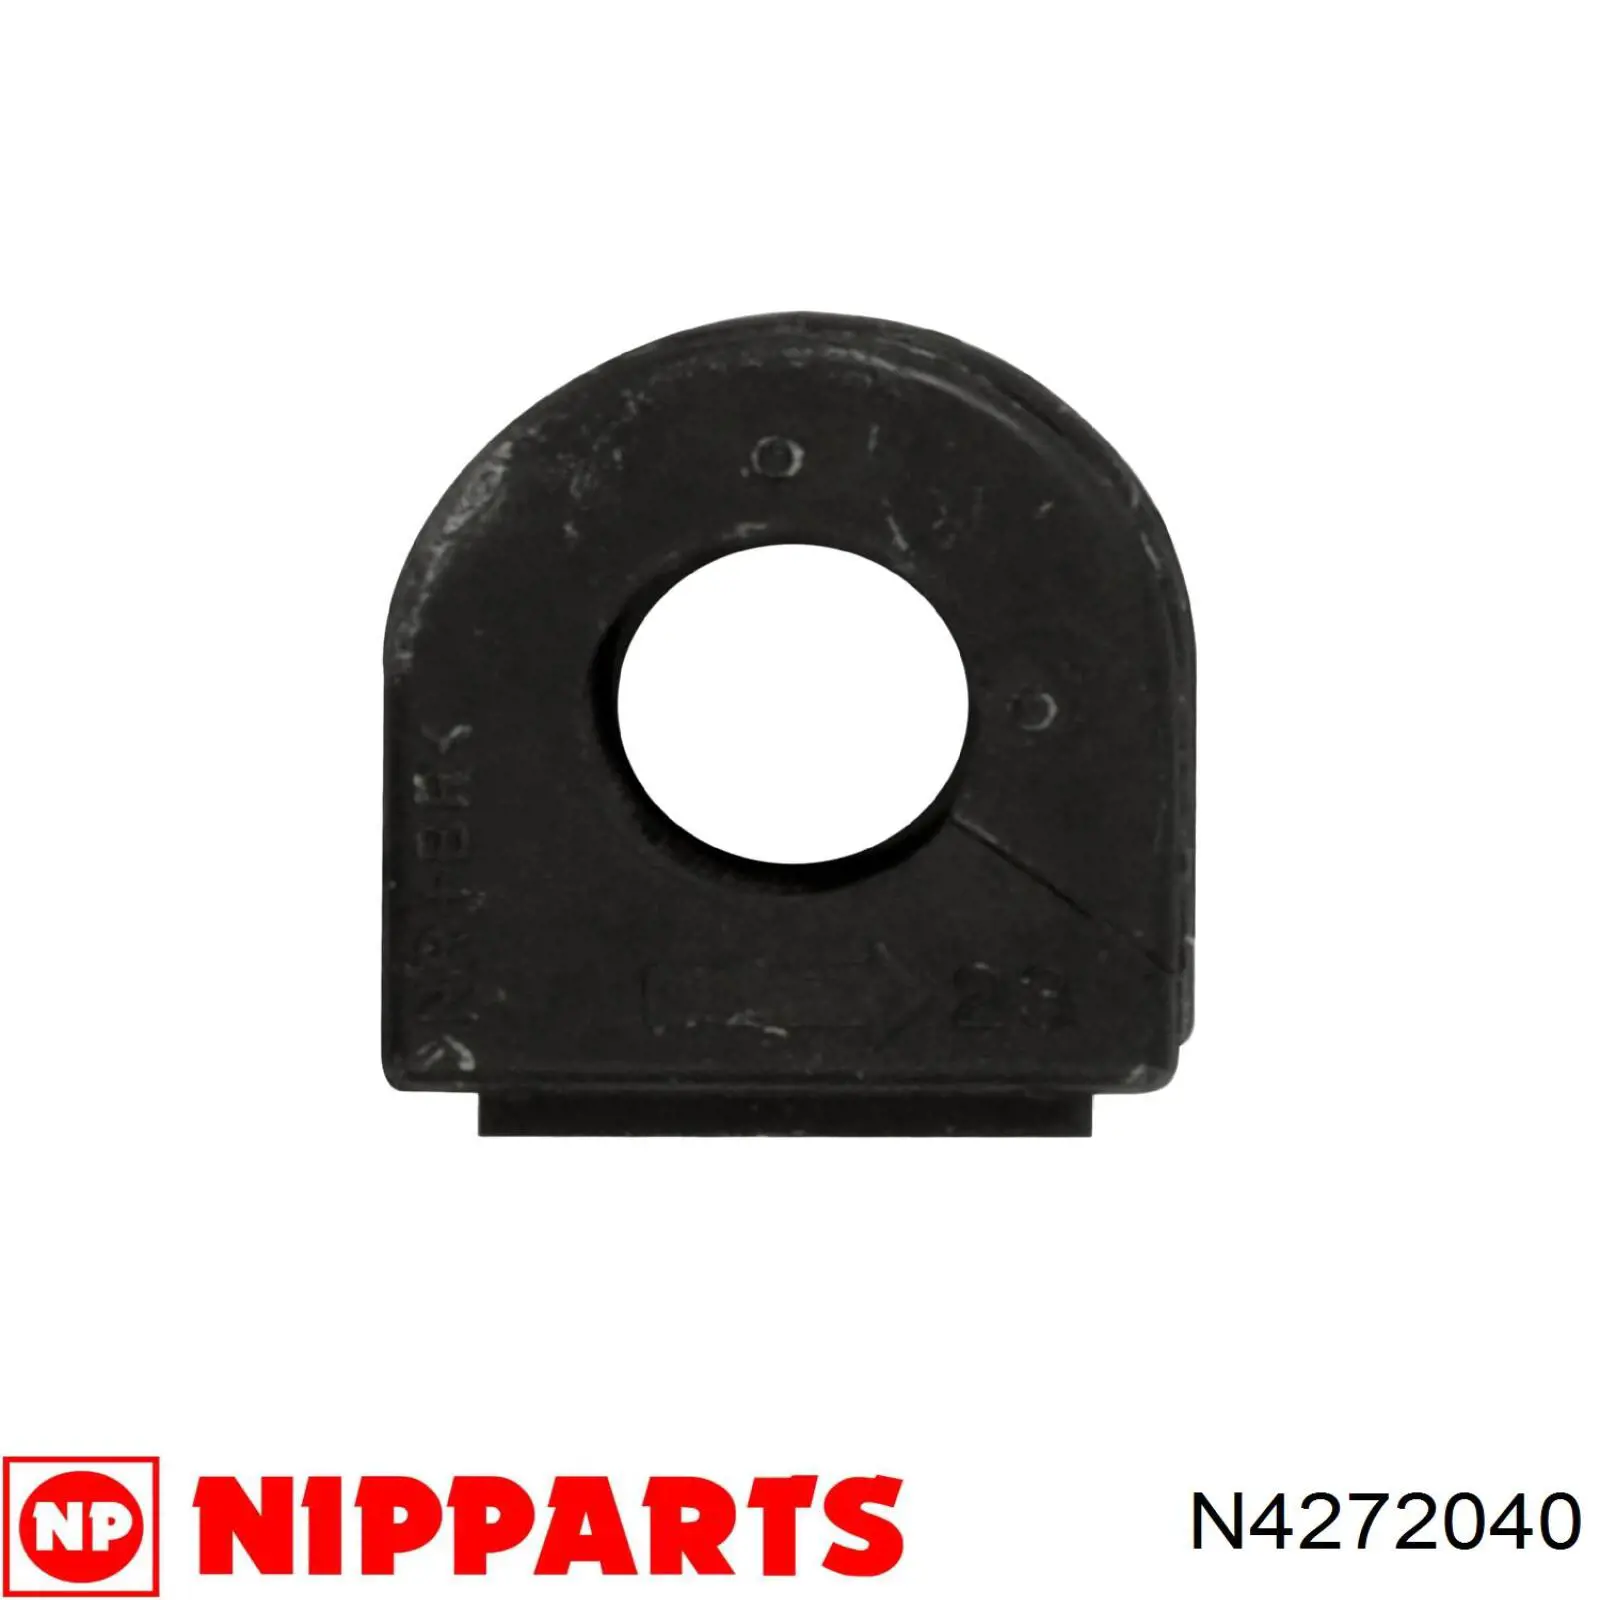 N4272040 Nipparts bucha de estabilizador dianteiro